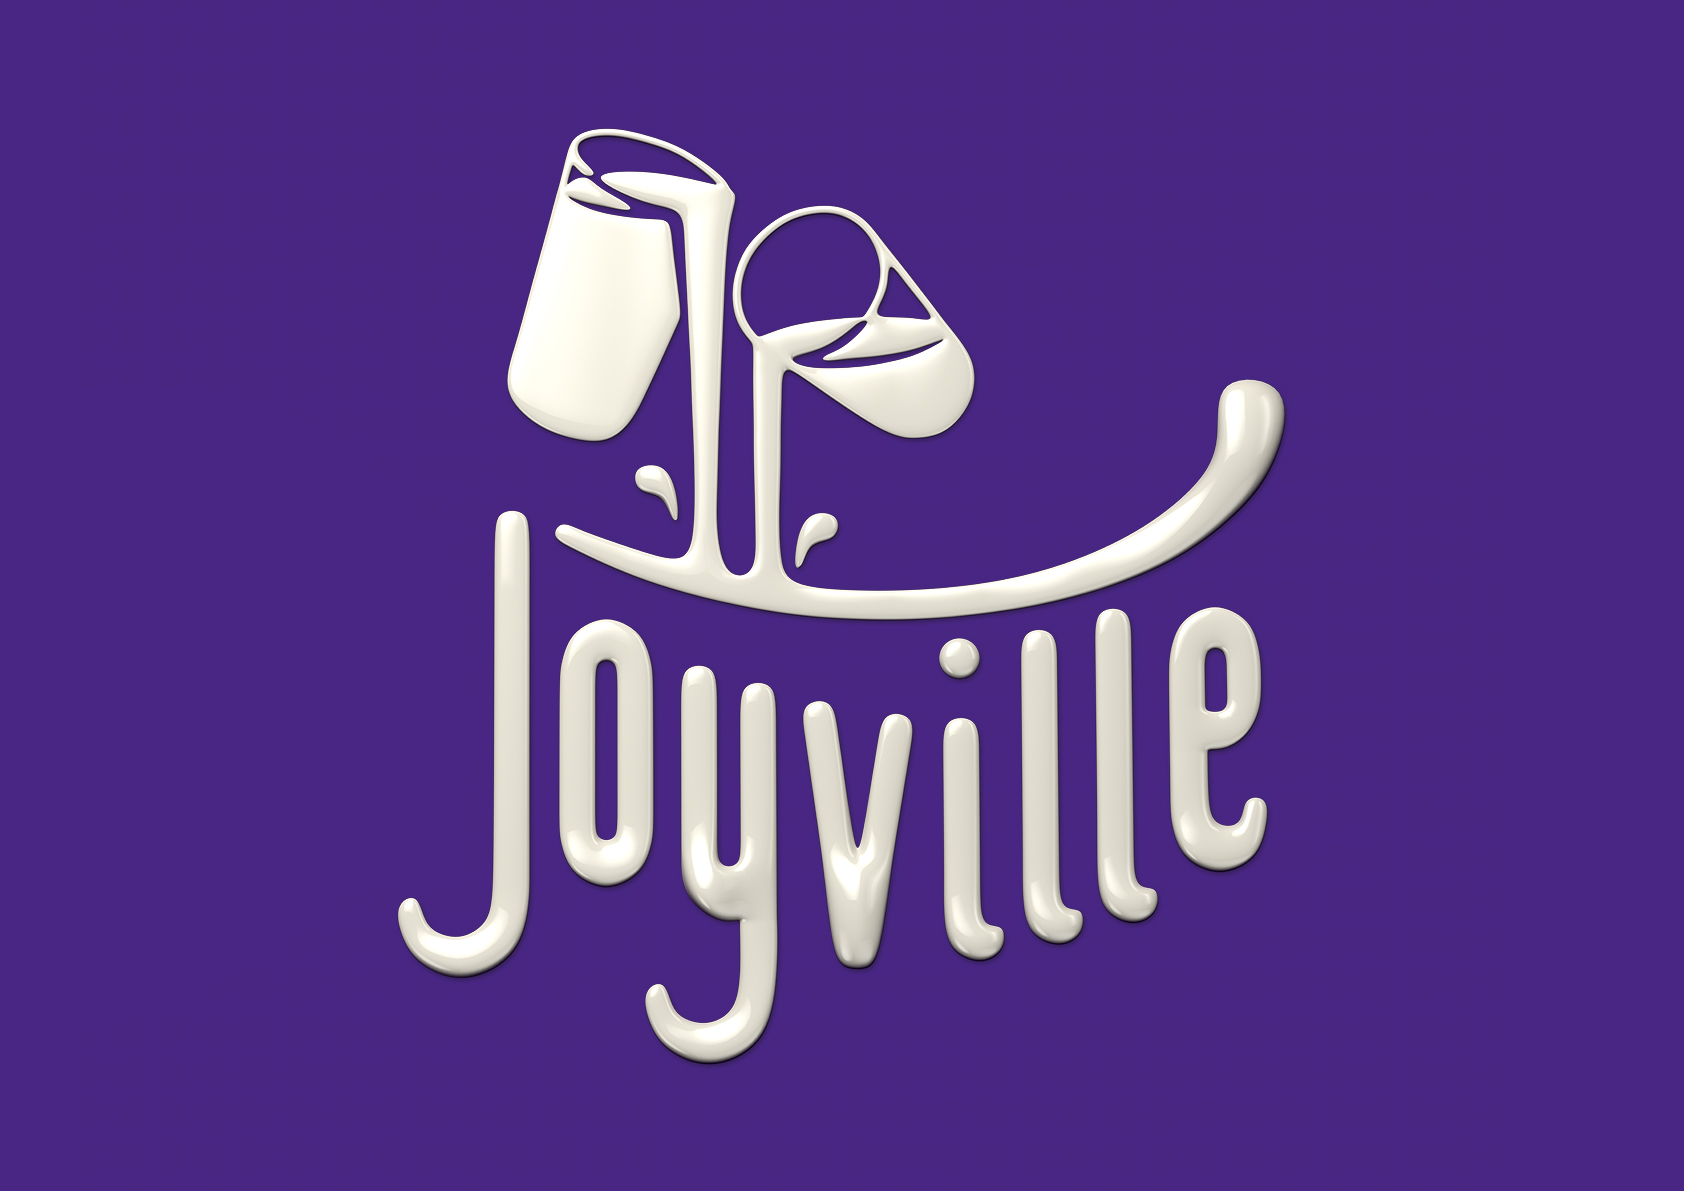 Joyville_Milk.jpg